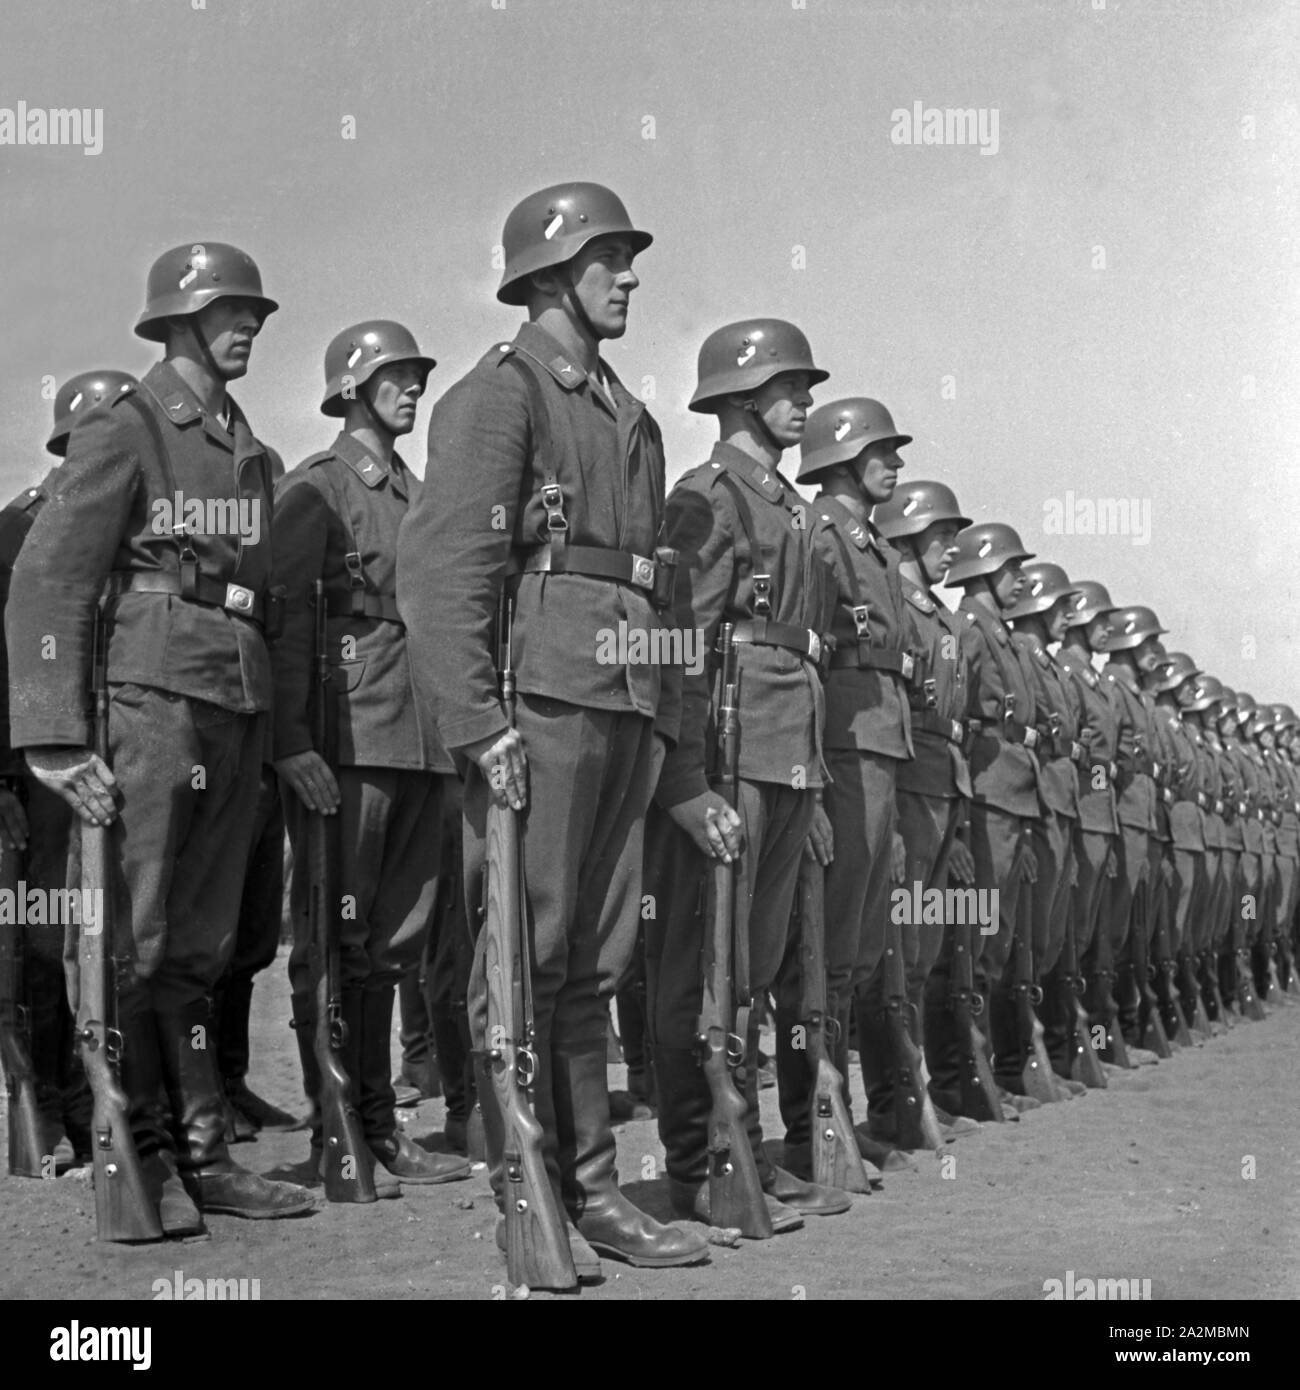 Kompanie einer Luftnachrichten Abteilung angetreten, Deutschland 1940. La società di un signal corps schierate, Germania 1940. Foto Stock